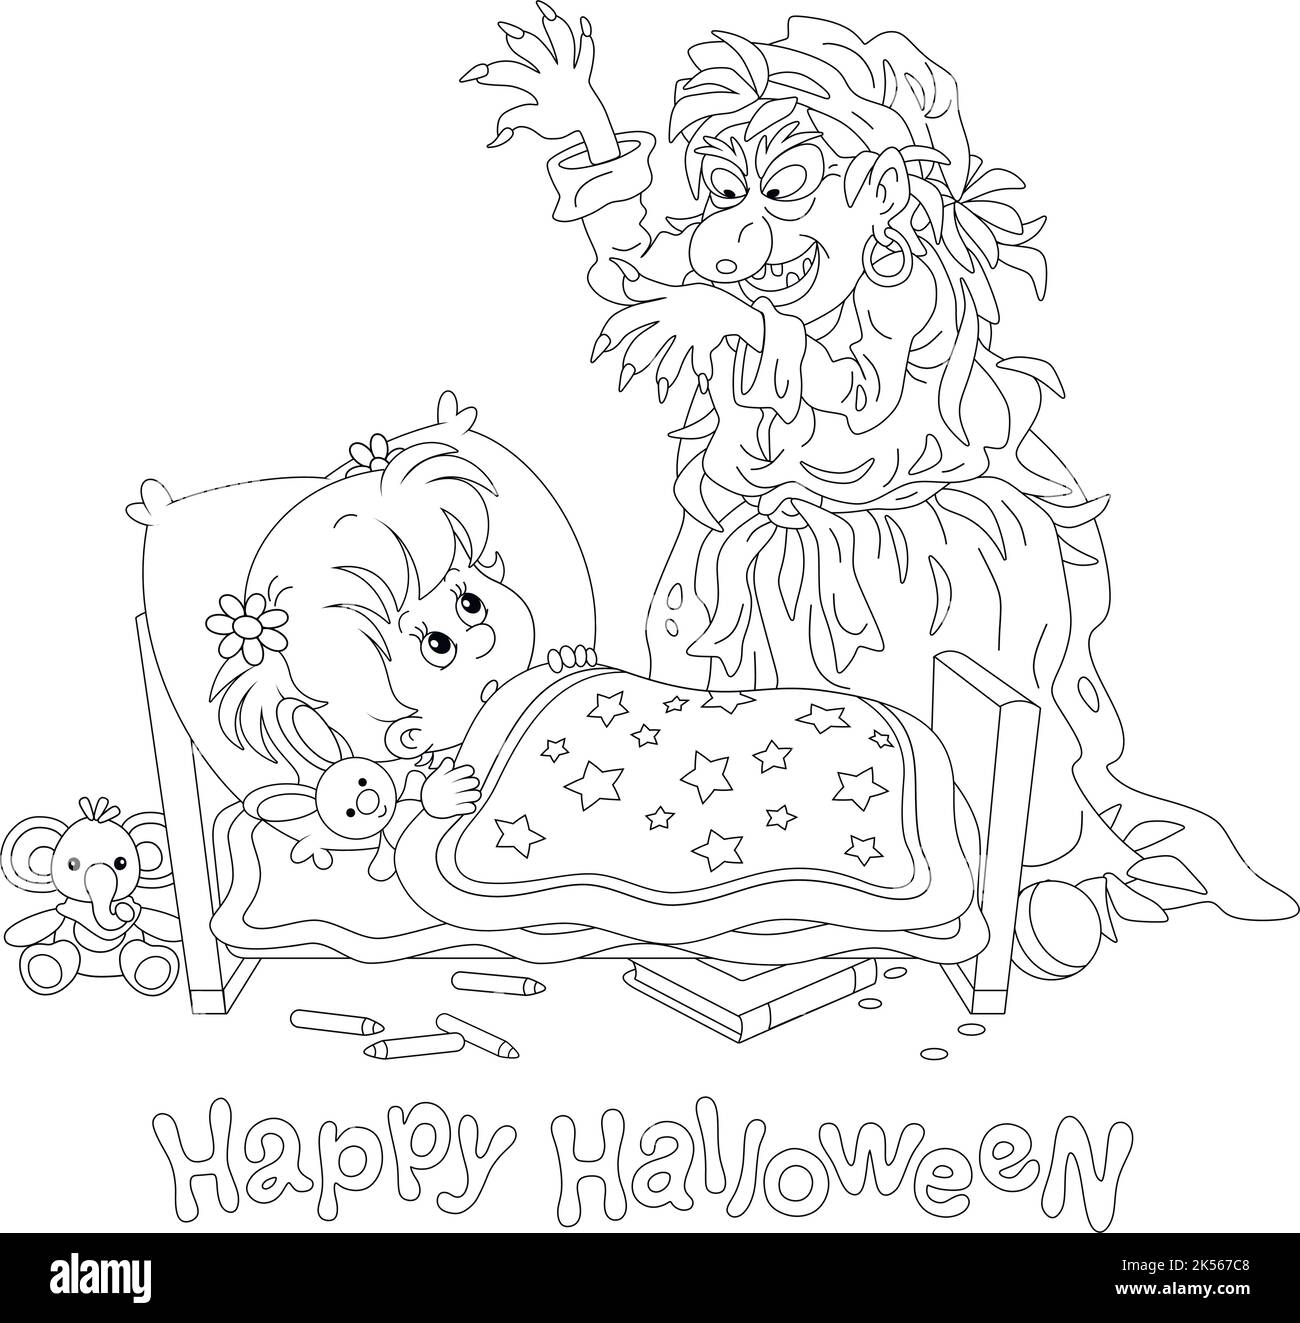 Bonne carte d'Halloween avec une sorcière en colère avec un sourire effrayant qui craque une petite fille dormant dans une pépinière lors d'une nuit de vacances sombre Illustration de Vecteur